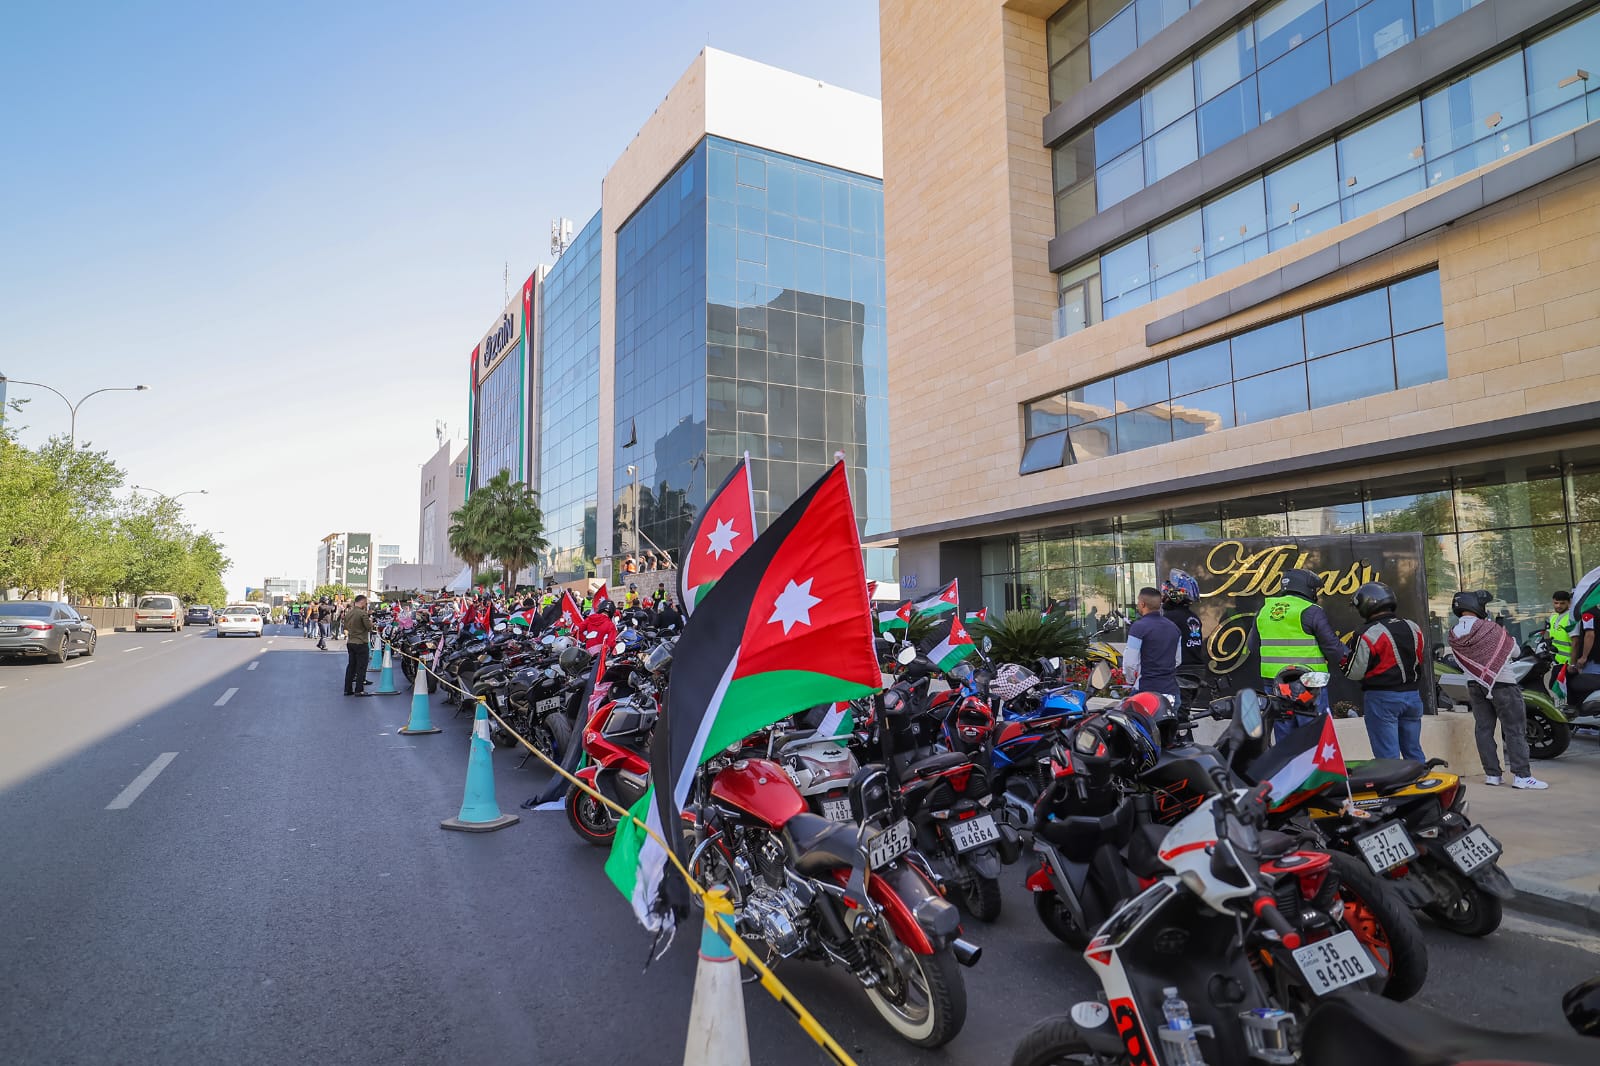 ضمن احتفالات زين بالعيد الـ 78 لاستقلال المملكة واليوبيل الفضي مسيرة دراجات مزيّنة بالأعلام الأردنية تنطلق من زين لتجوب شوارع عمان